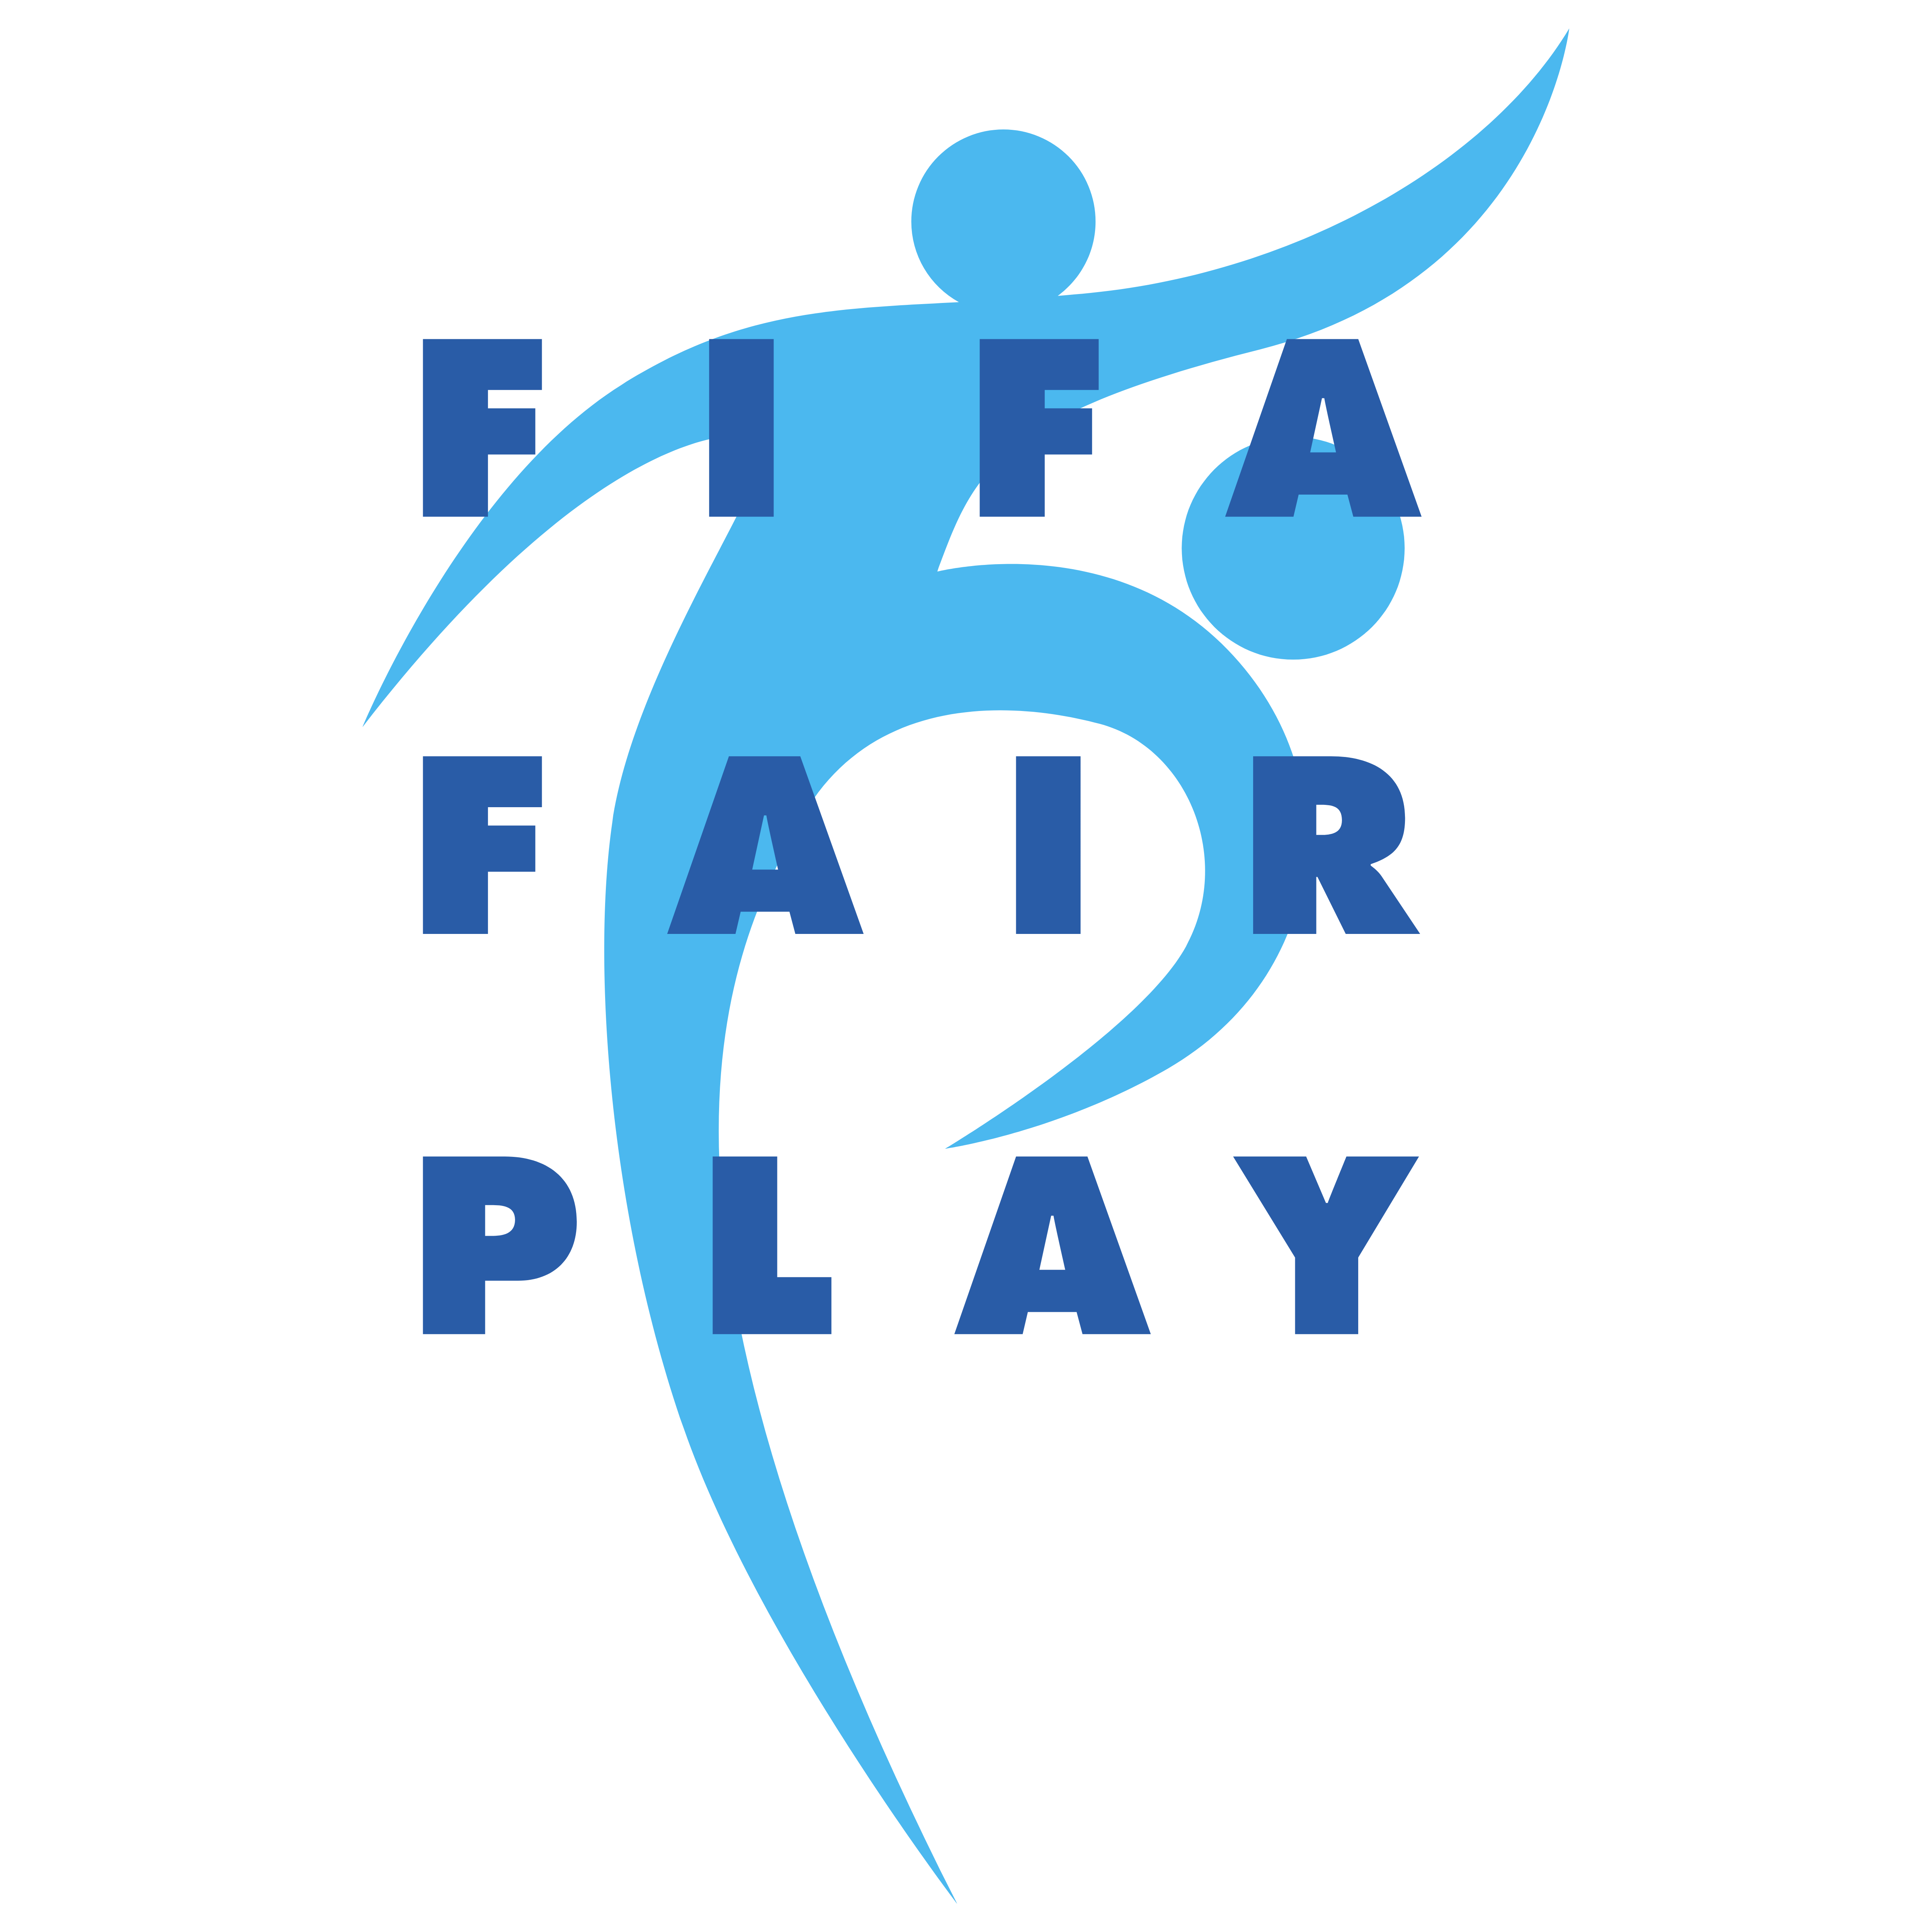 Основным принципом fair play является. Fair Play эмблема. Логотип движения Фэйр плей. Лига фейр плей логотип. UEFA логотип ФИФА.